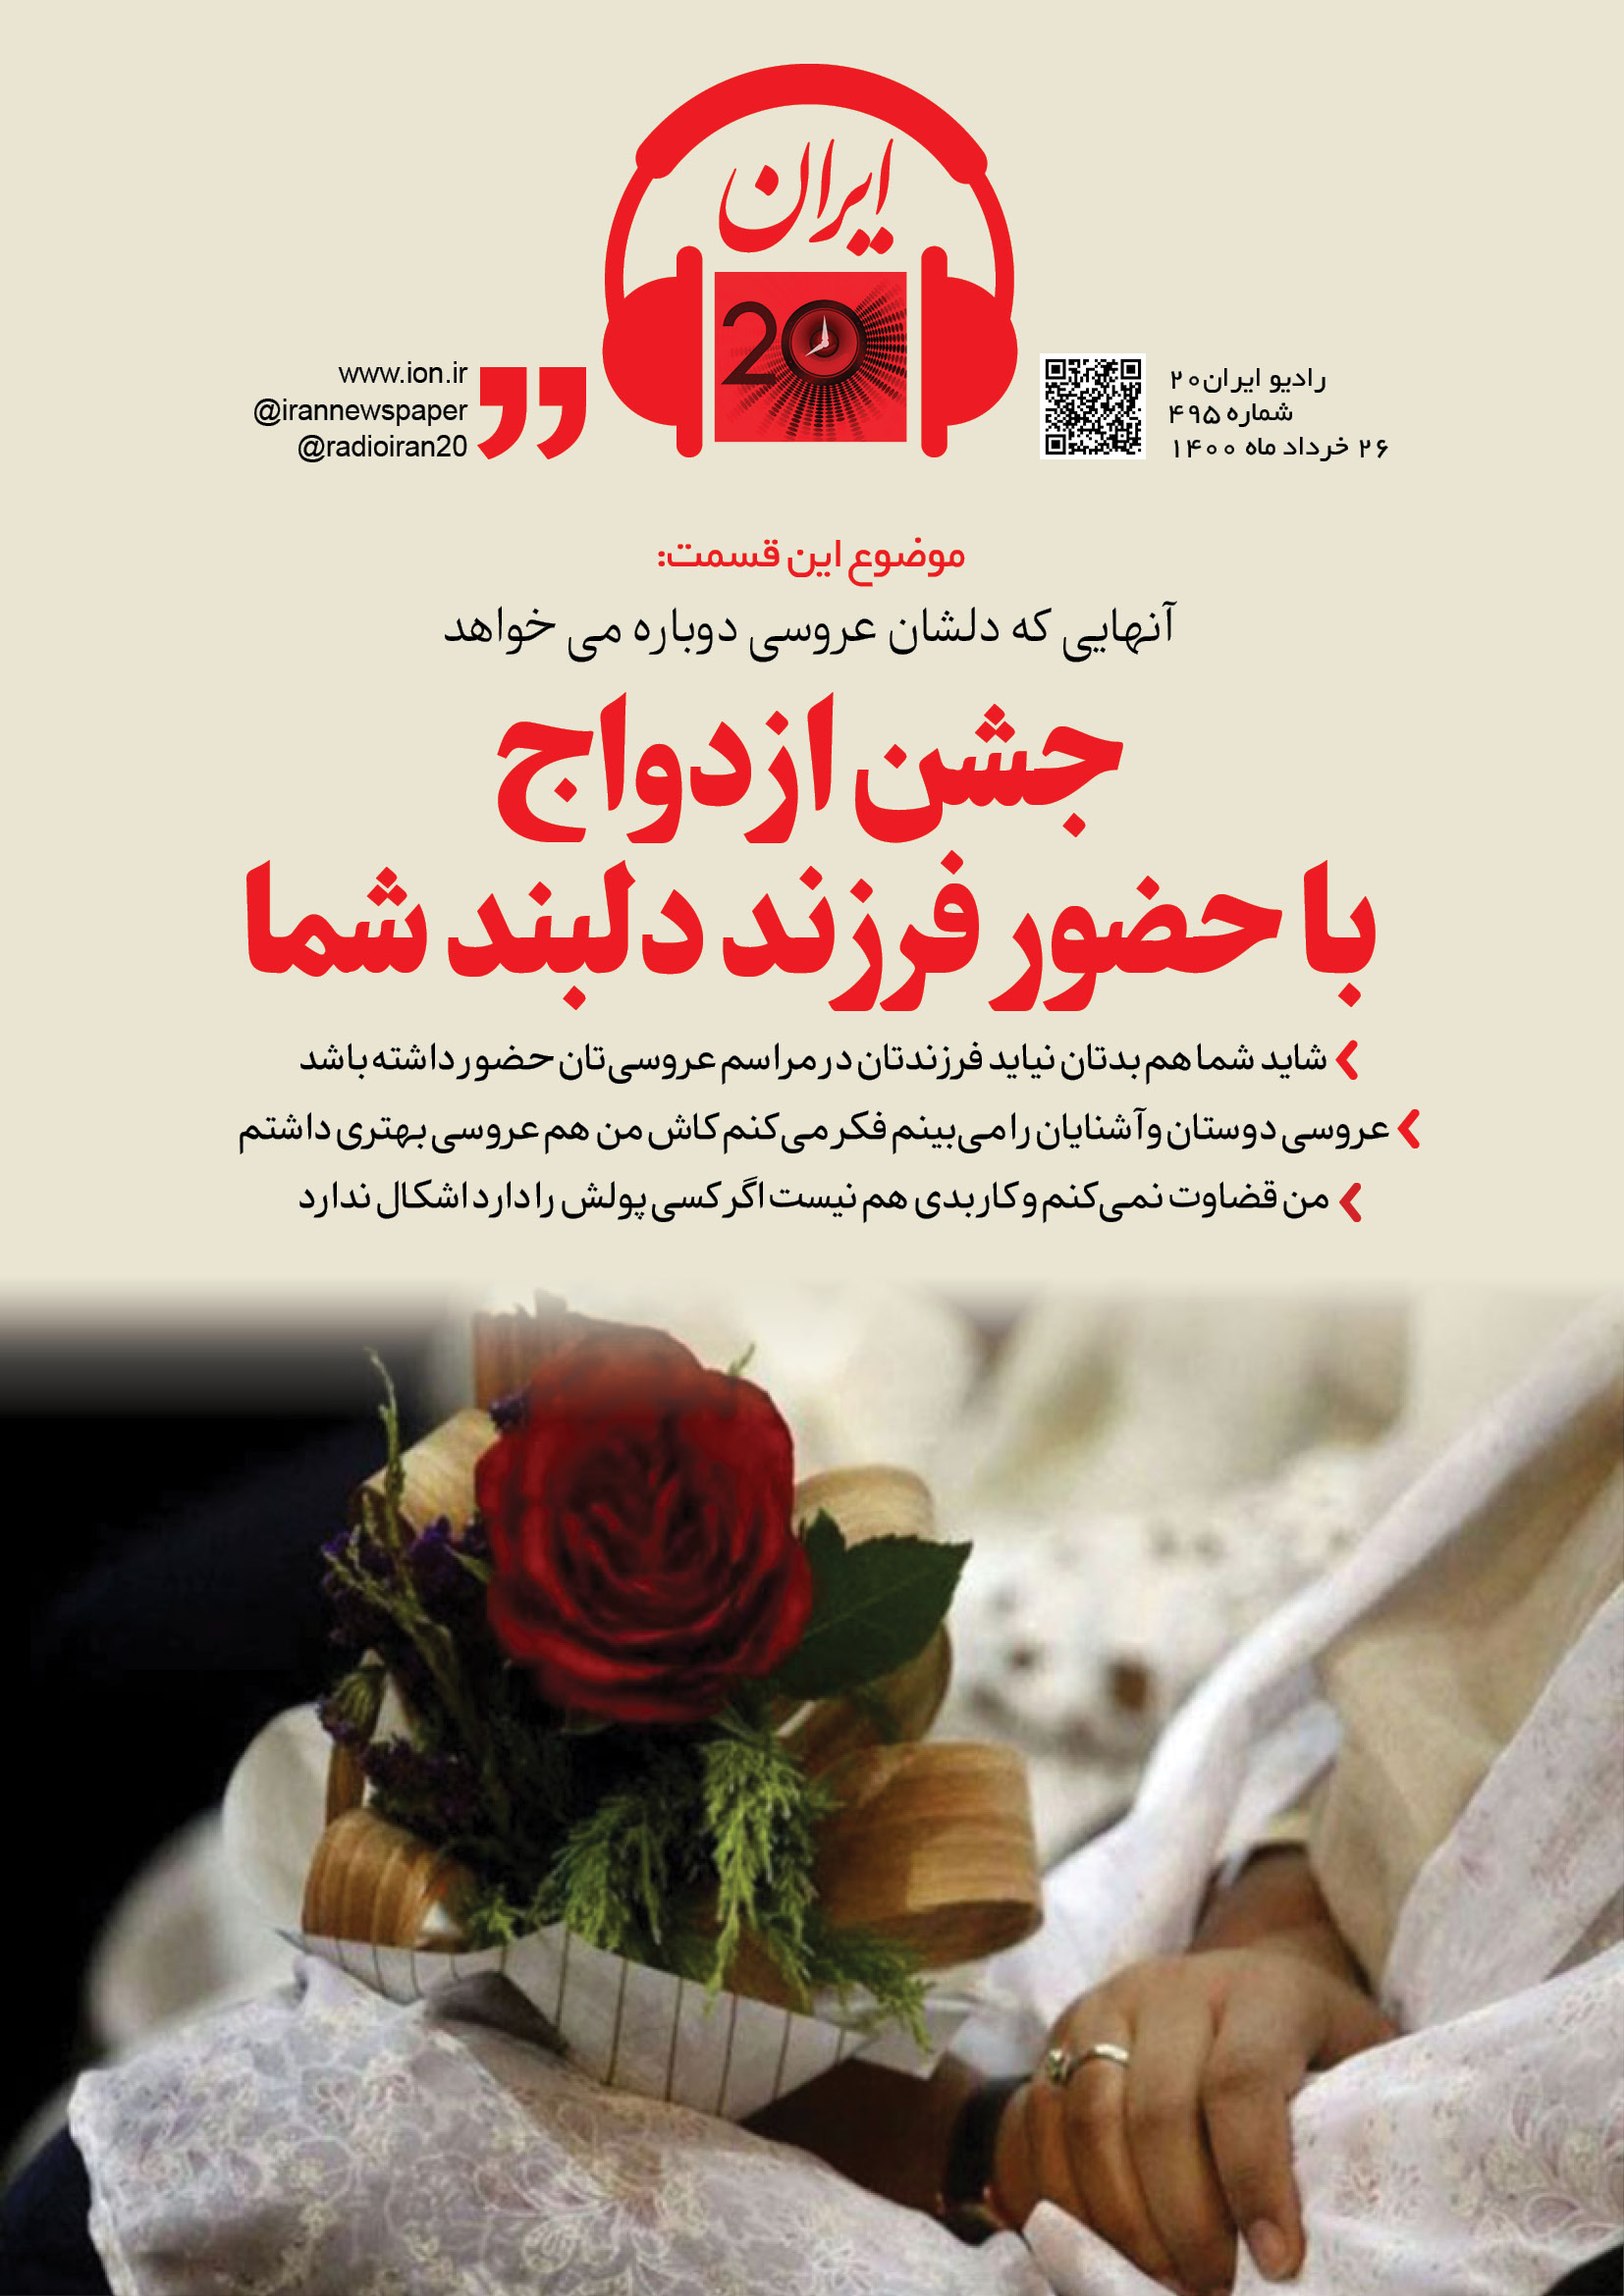 در رادیو ایران ۲۰ بشنوید: جشن ازدواج با حضور فرزند دلبند شما